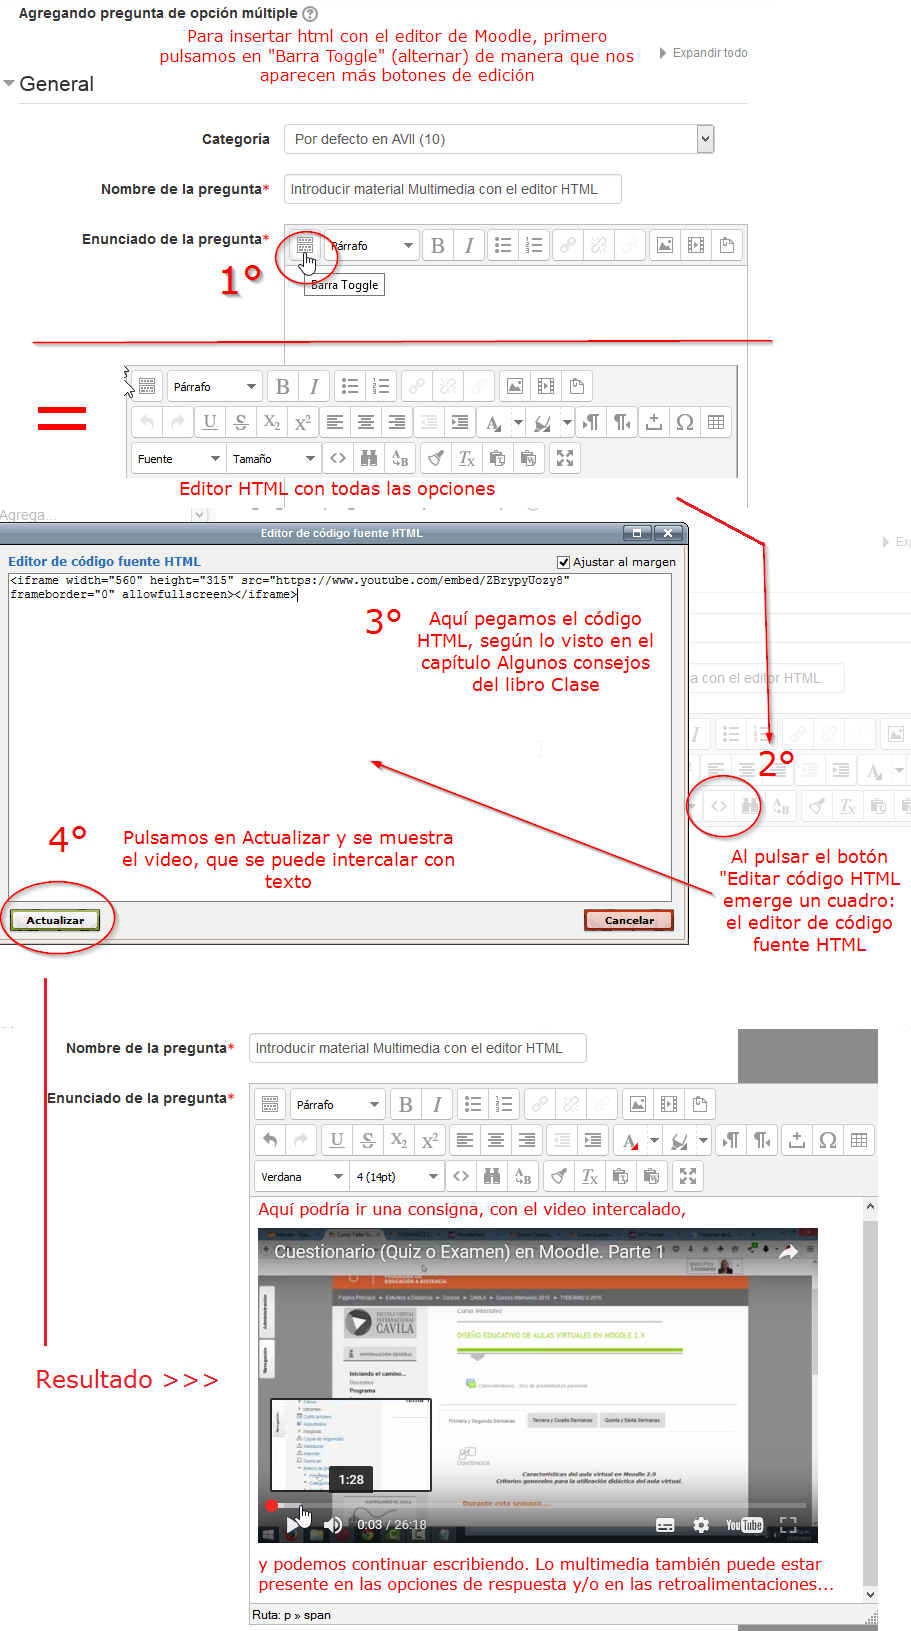 conjunto de capturas de pantalla que grafican el procedimiento de utilización del editor de código fuente HTML de Moodle para incluír material multimedia